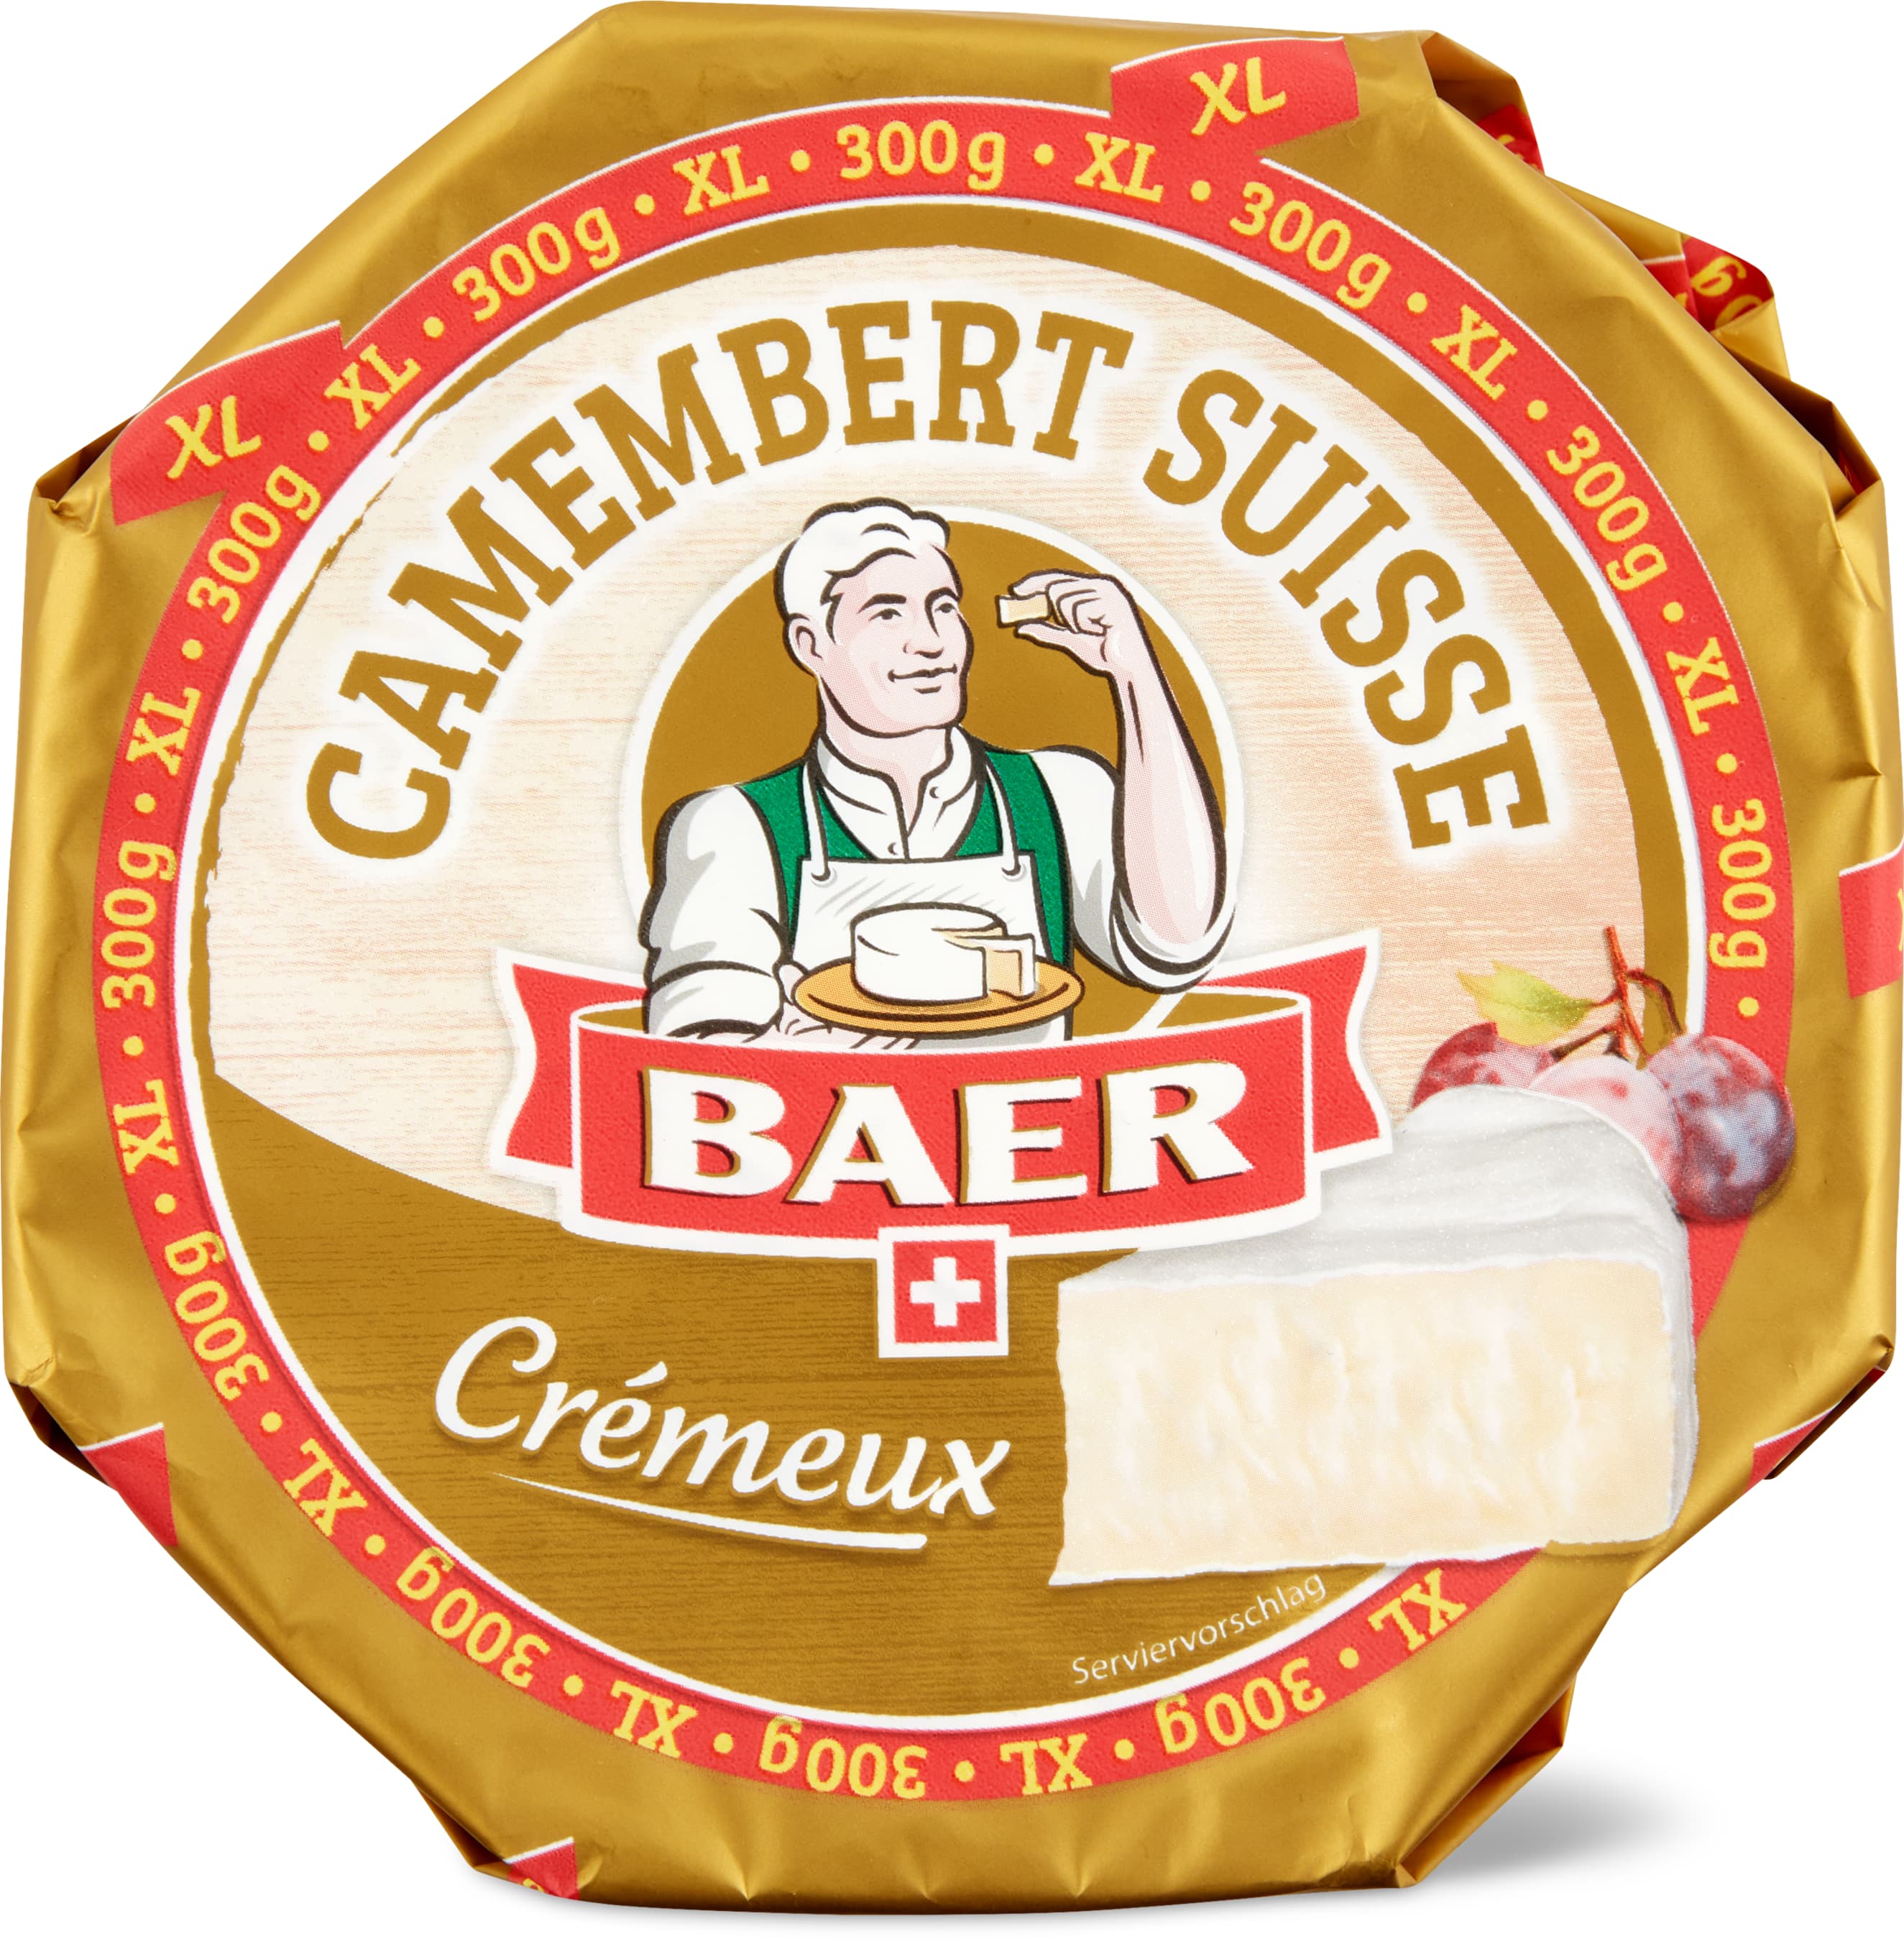 Baer Camembert Suisse Crémeux